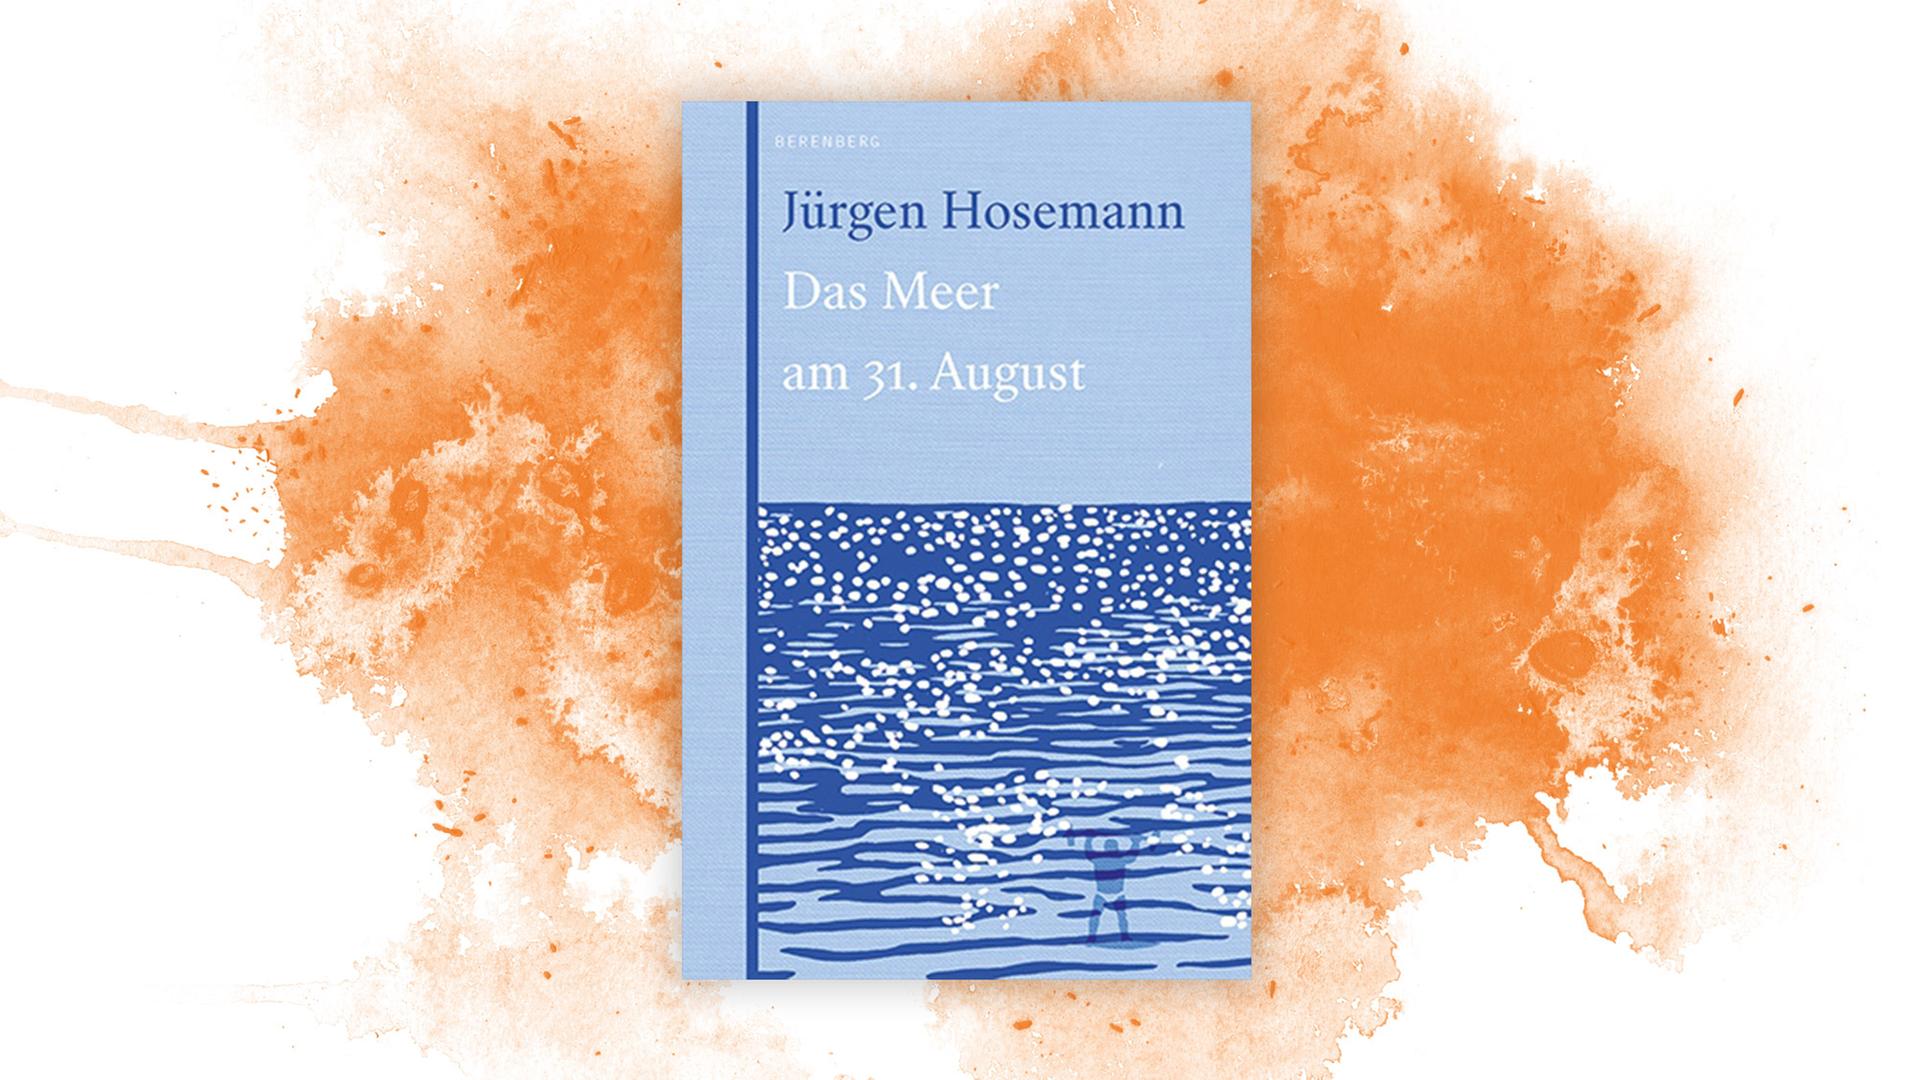 In der Reihe "Bücher zum Verschenken" empfehlen wir "Das Meer am 31.August".